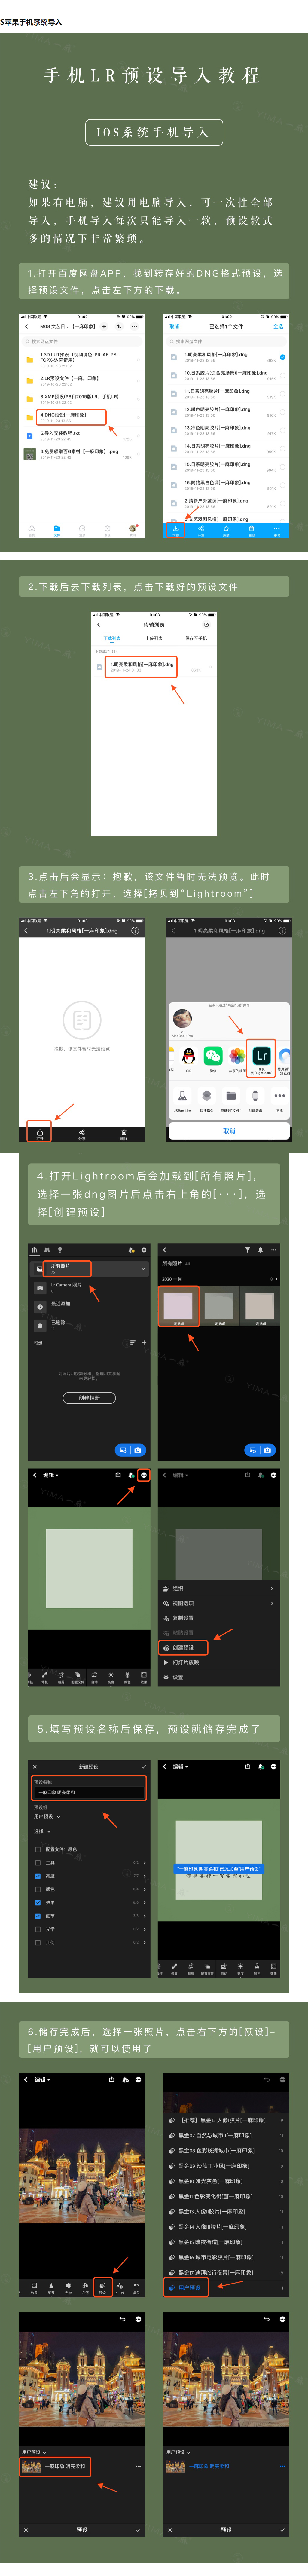 LR预设安卓手机/iOS系统导入教程-酷社 (KUSHEW)